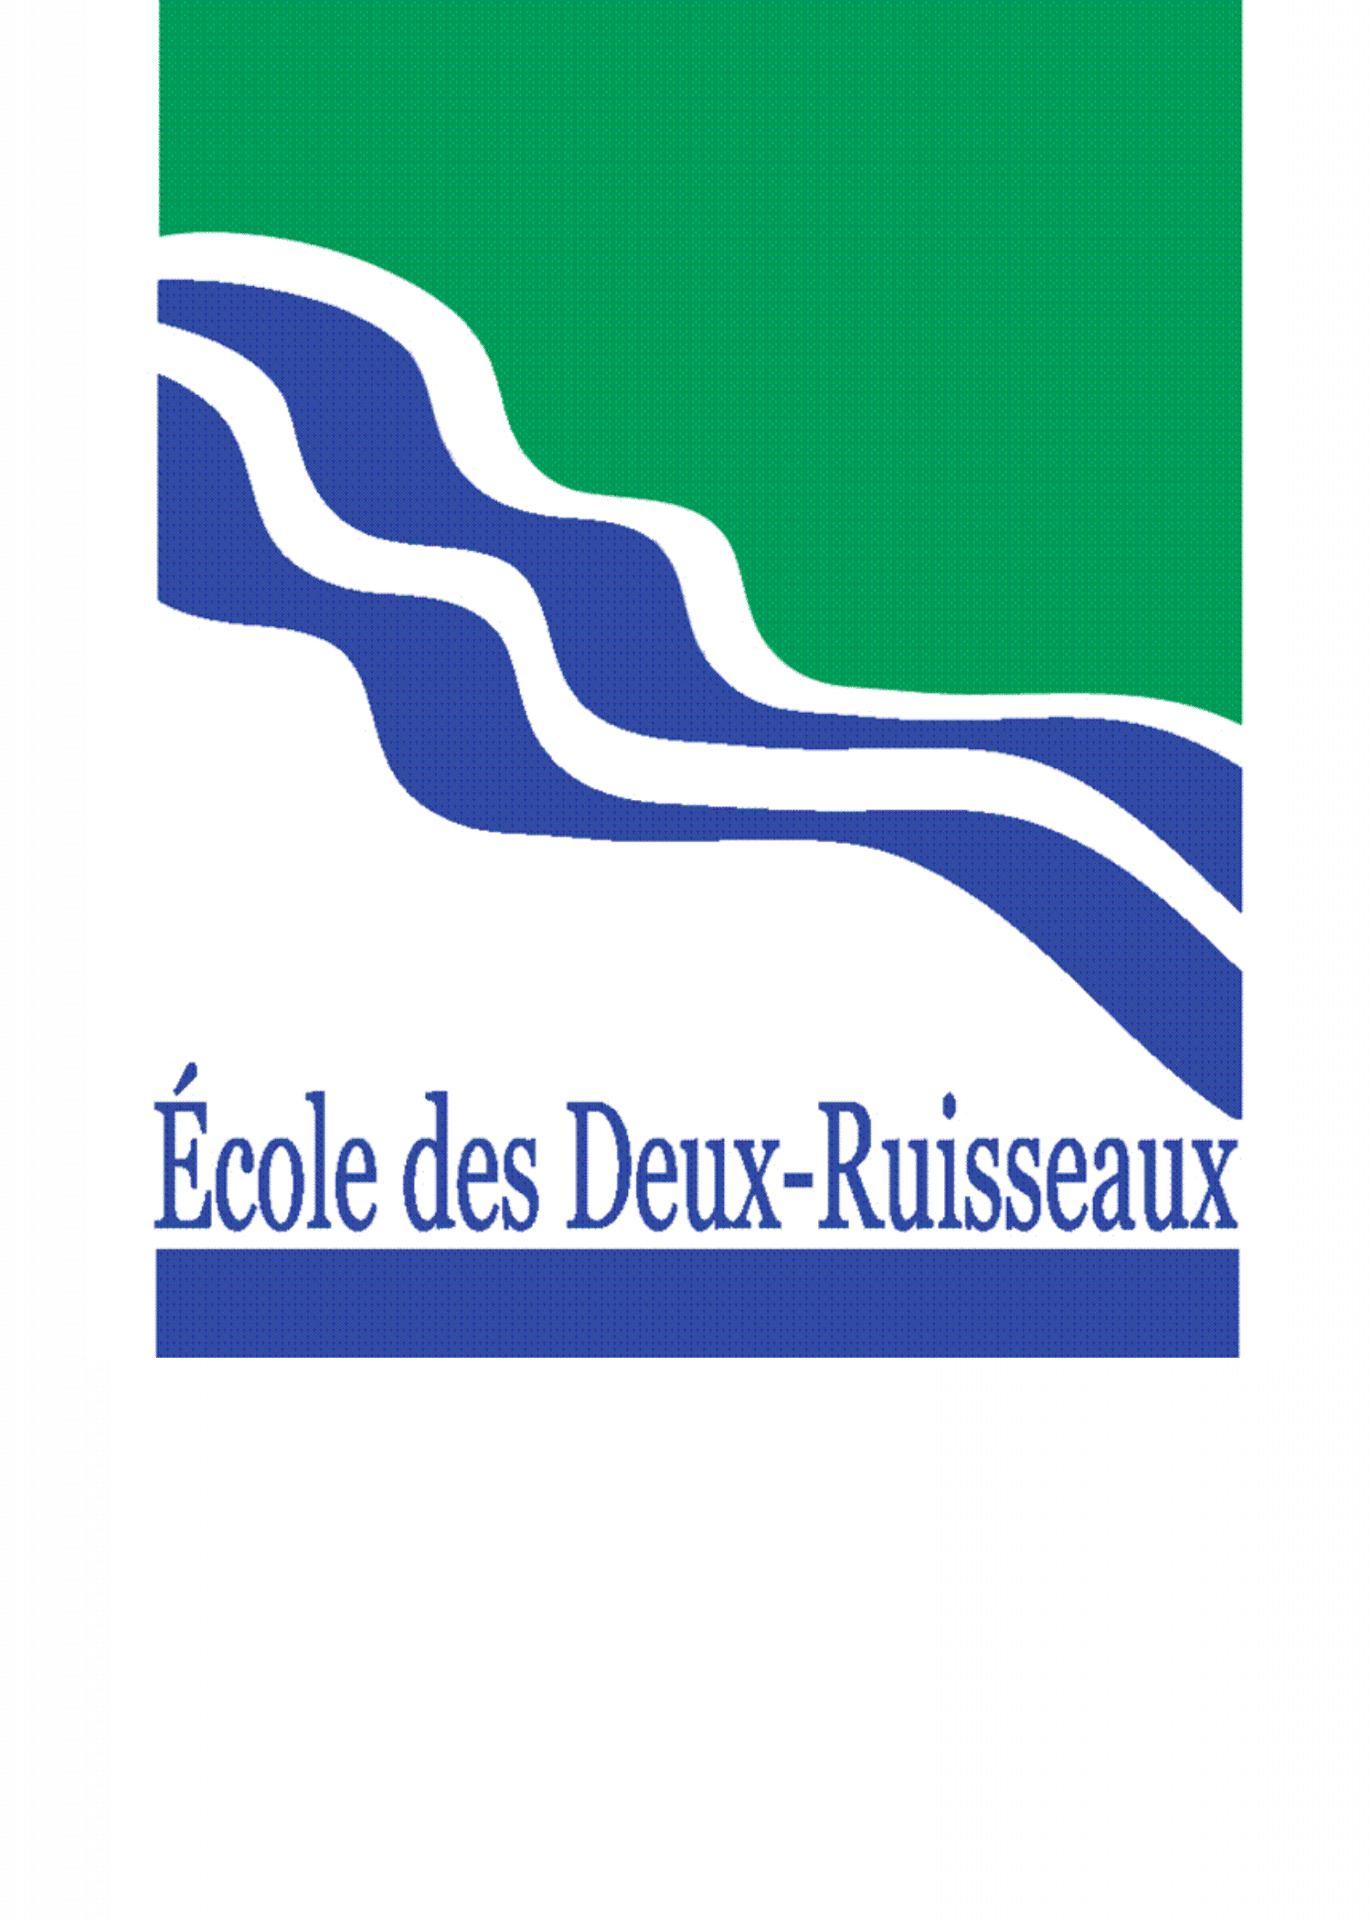 logo école des deux-ruisseaux